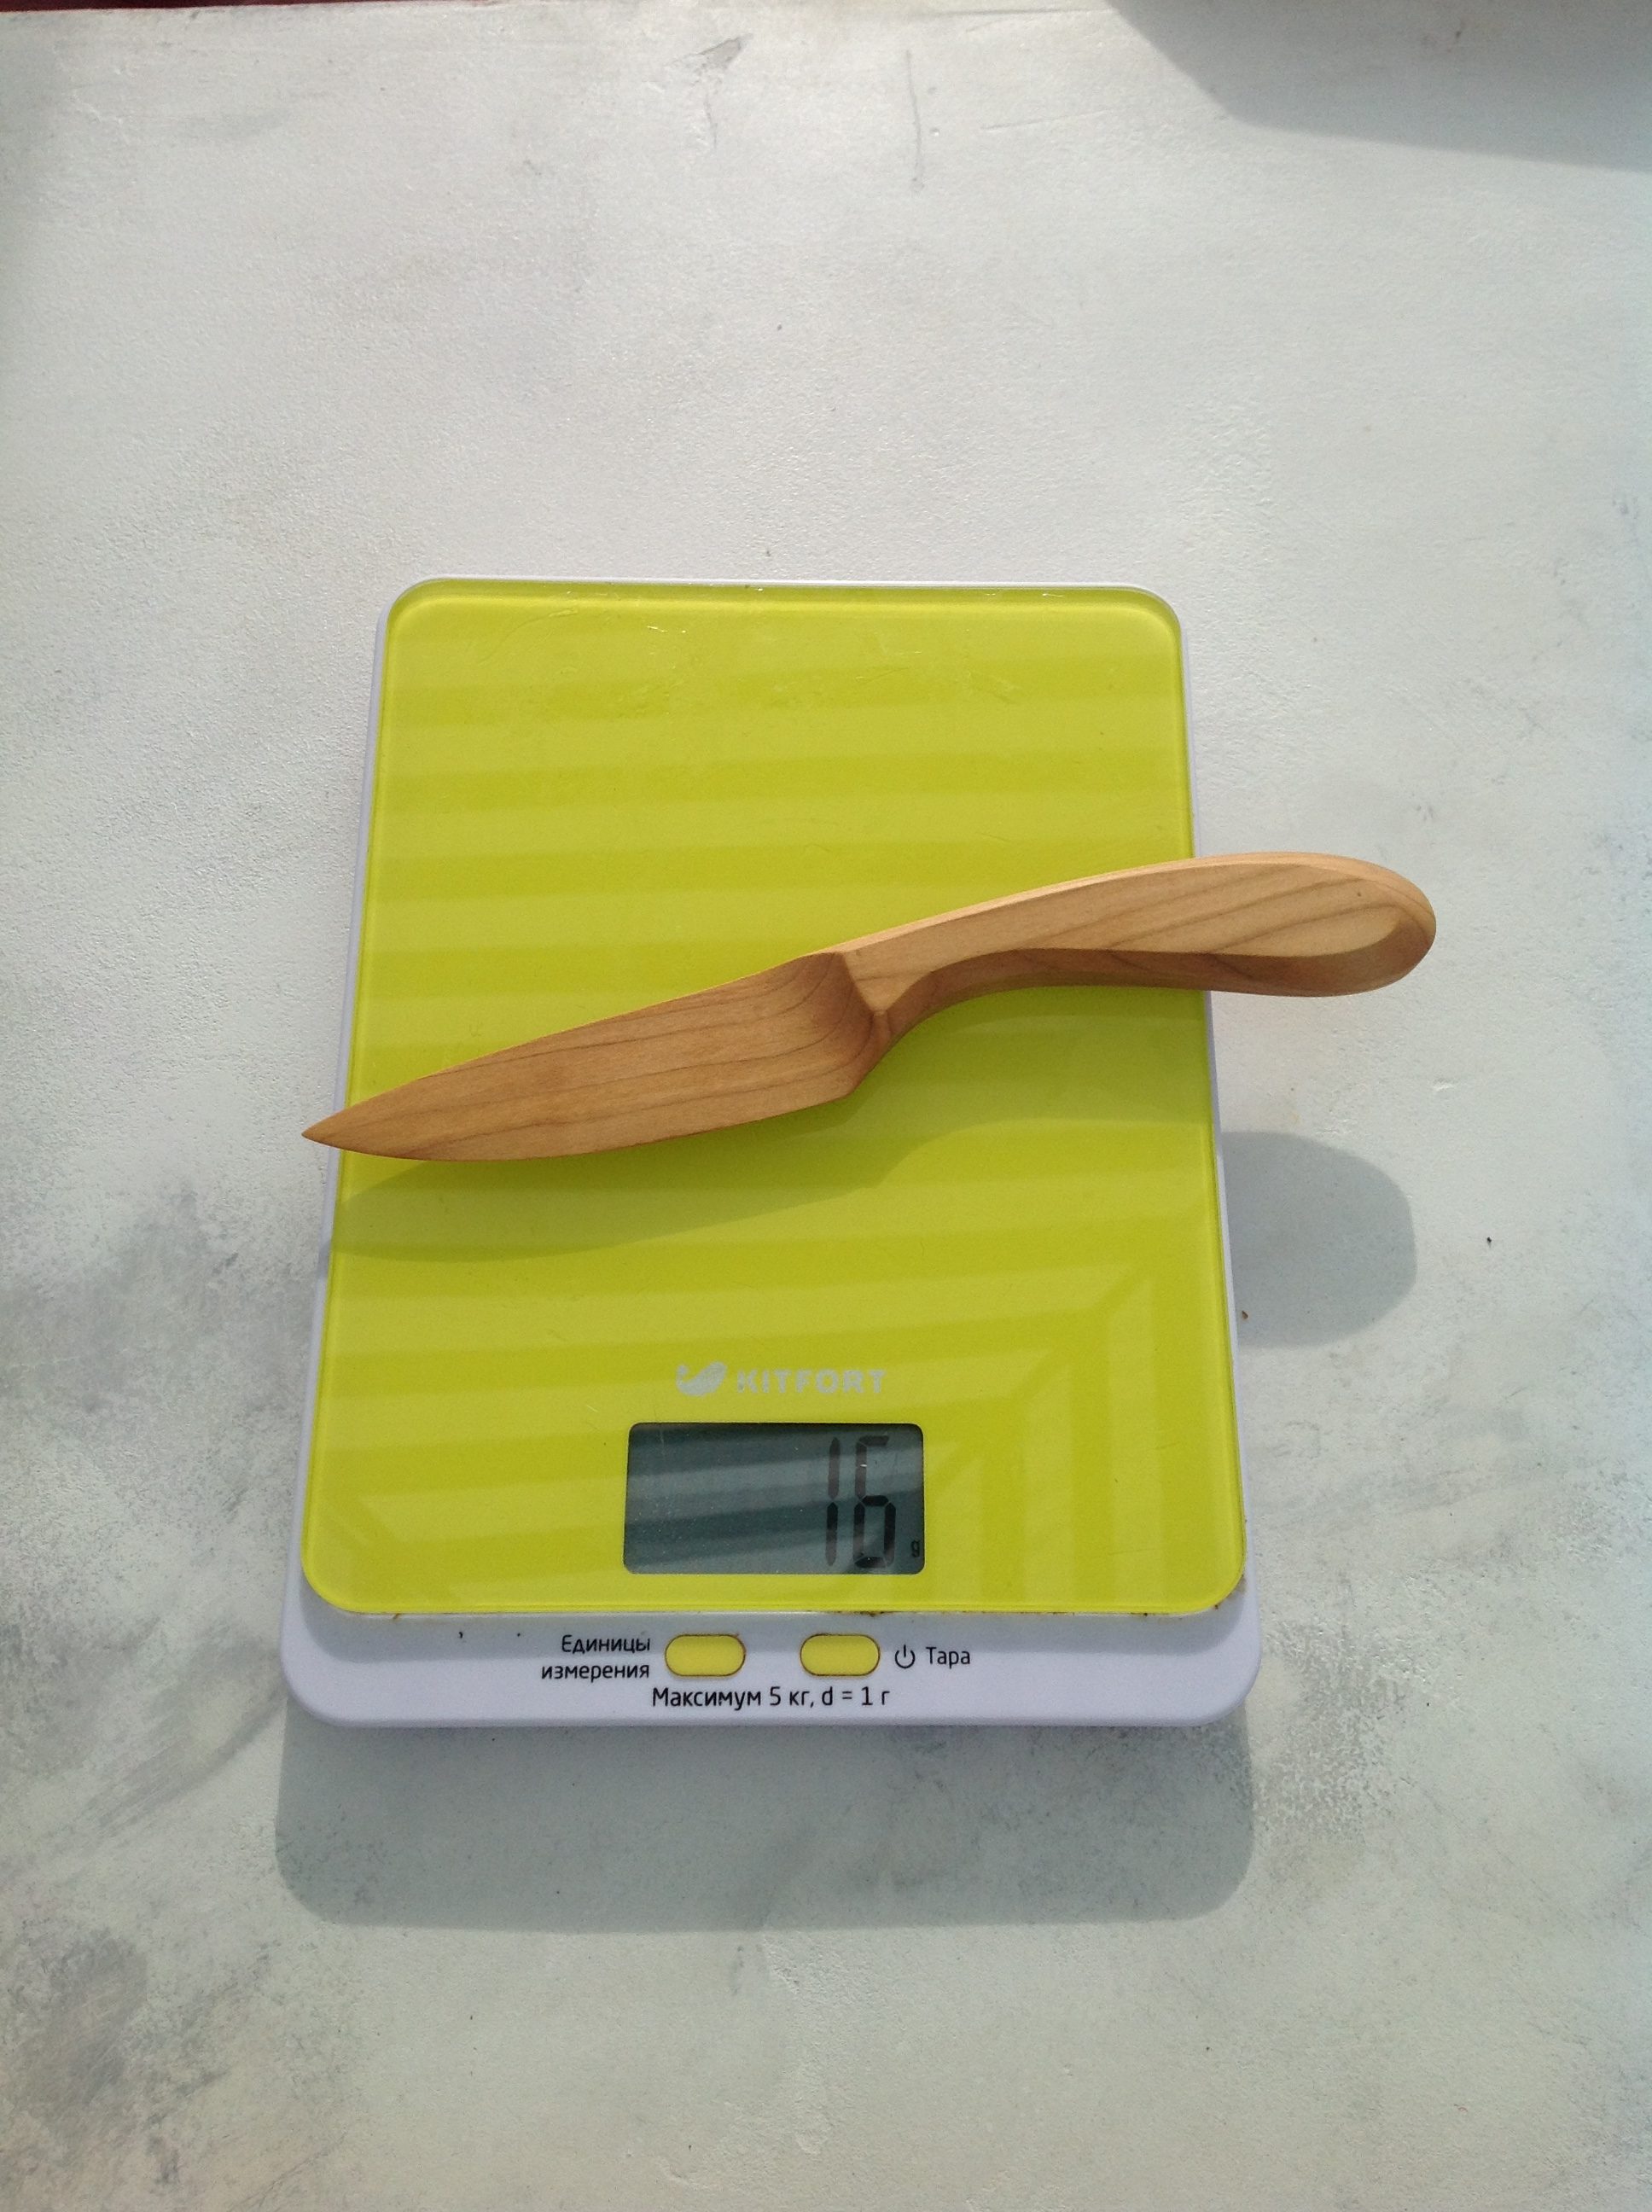 Orta boy hediyelik tahta bıçağın ağırlığı ne kadardır?